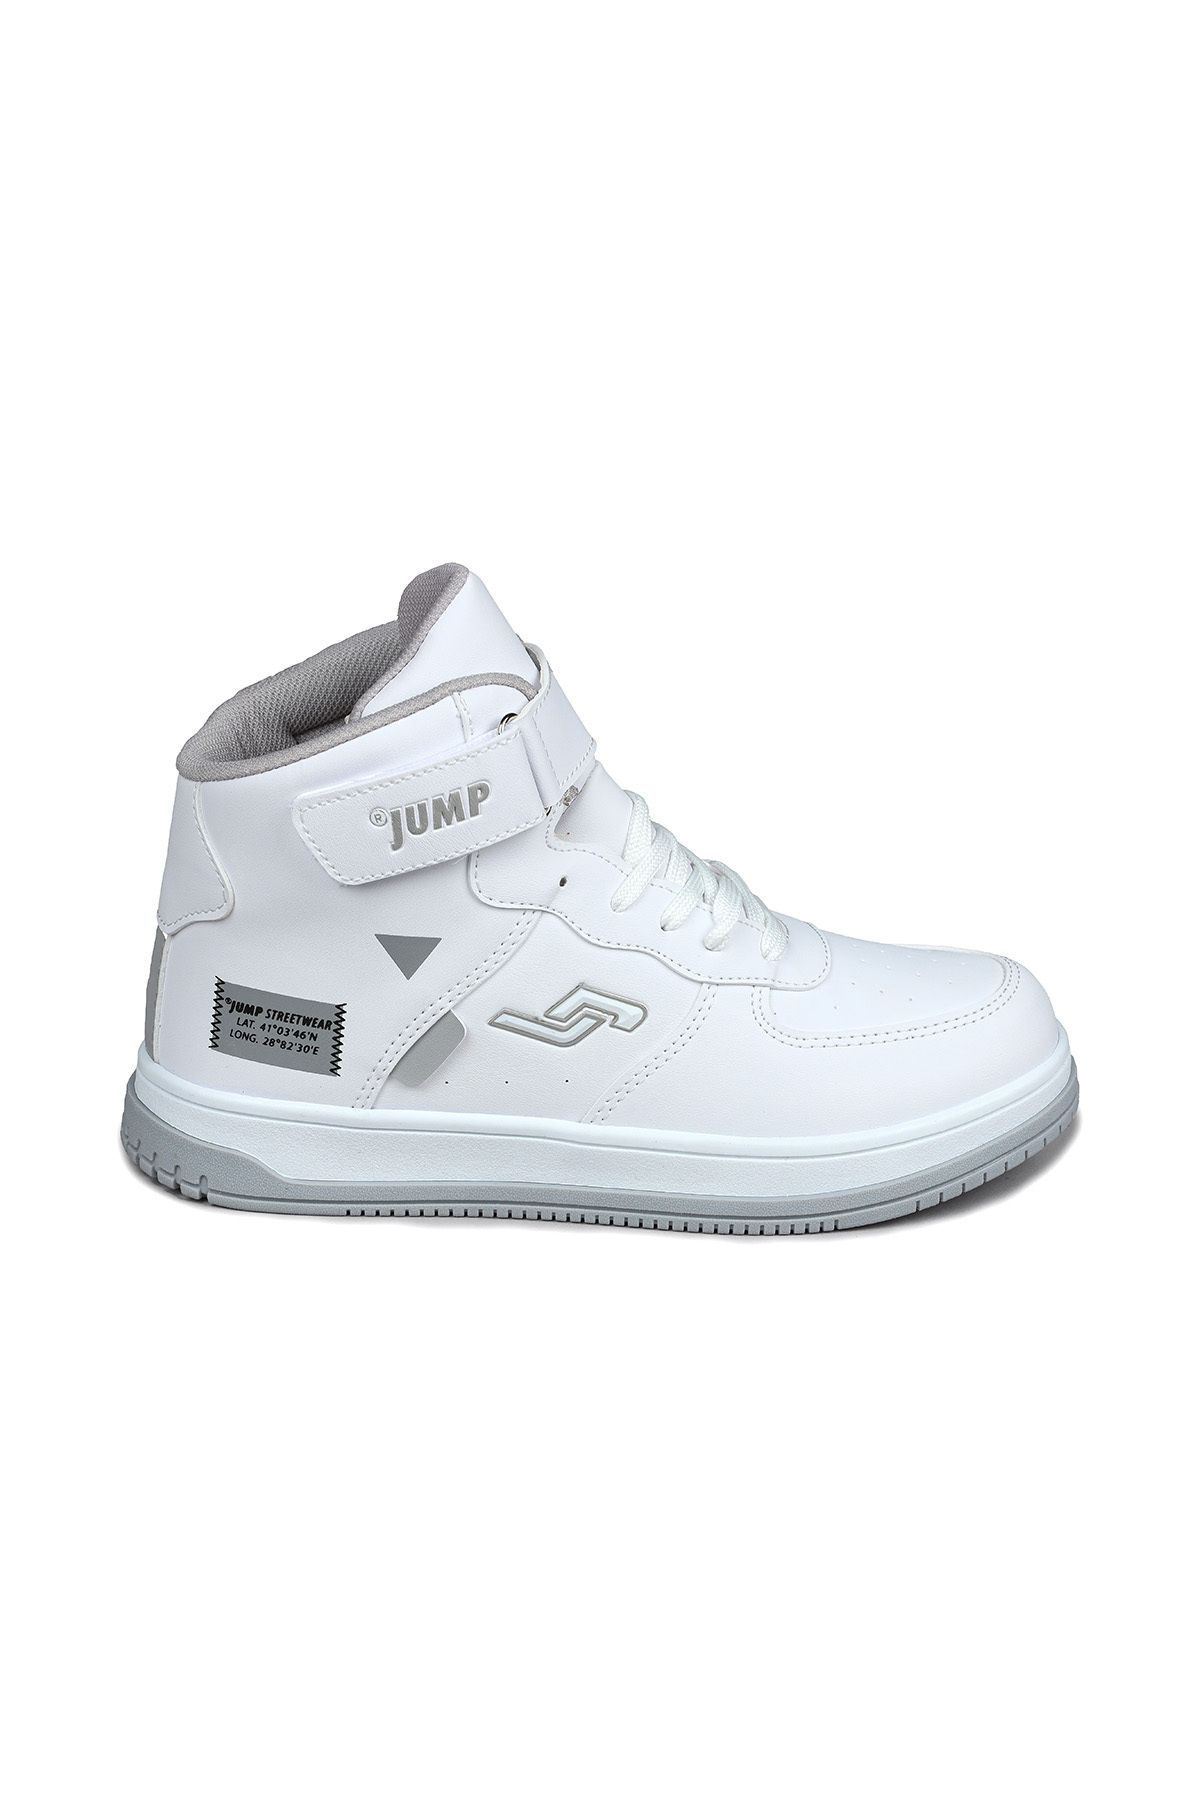 Jump 27835 Cırtlı Yüksek Bilekli Beyaz Genç Sneaker Günlük Spor Ayakkabı